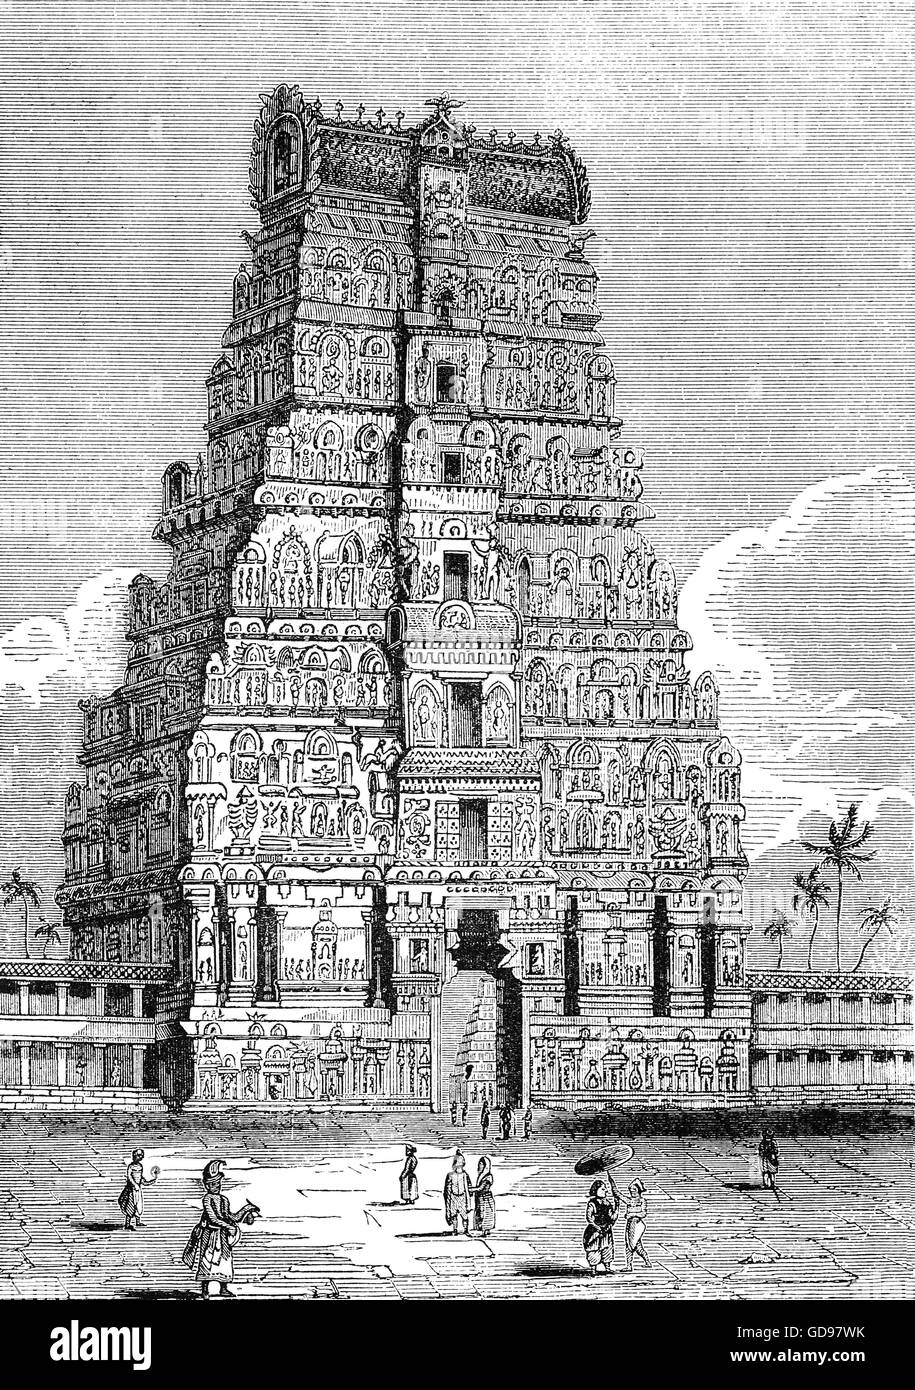 19e siècle vue de la pagode de Chillenbaum au Tamil Nadu, Inde du Sud Banque D'Images